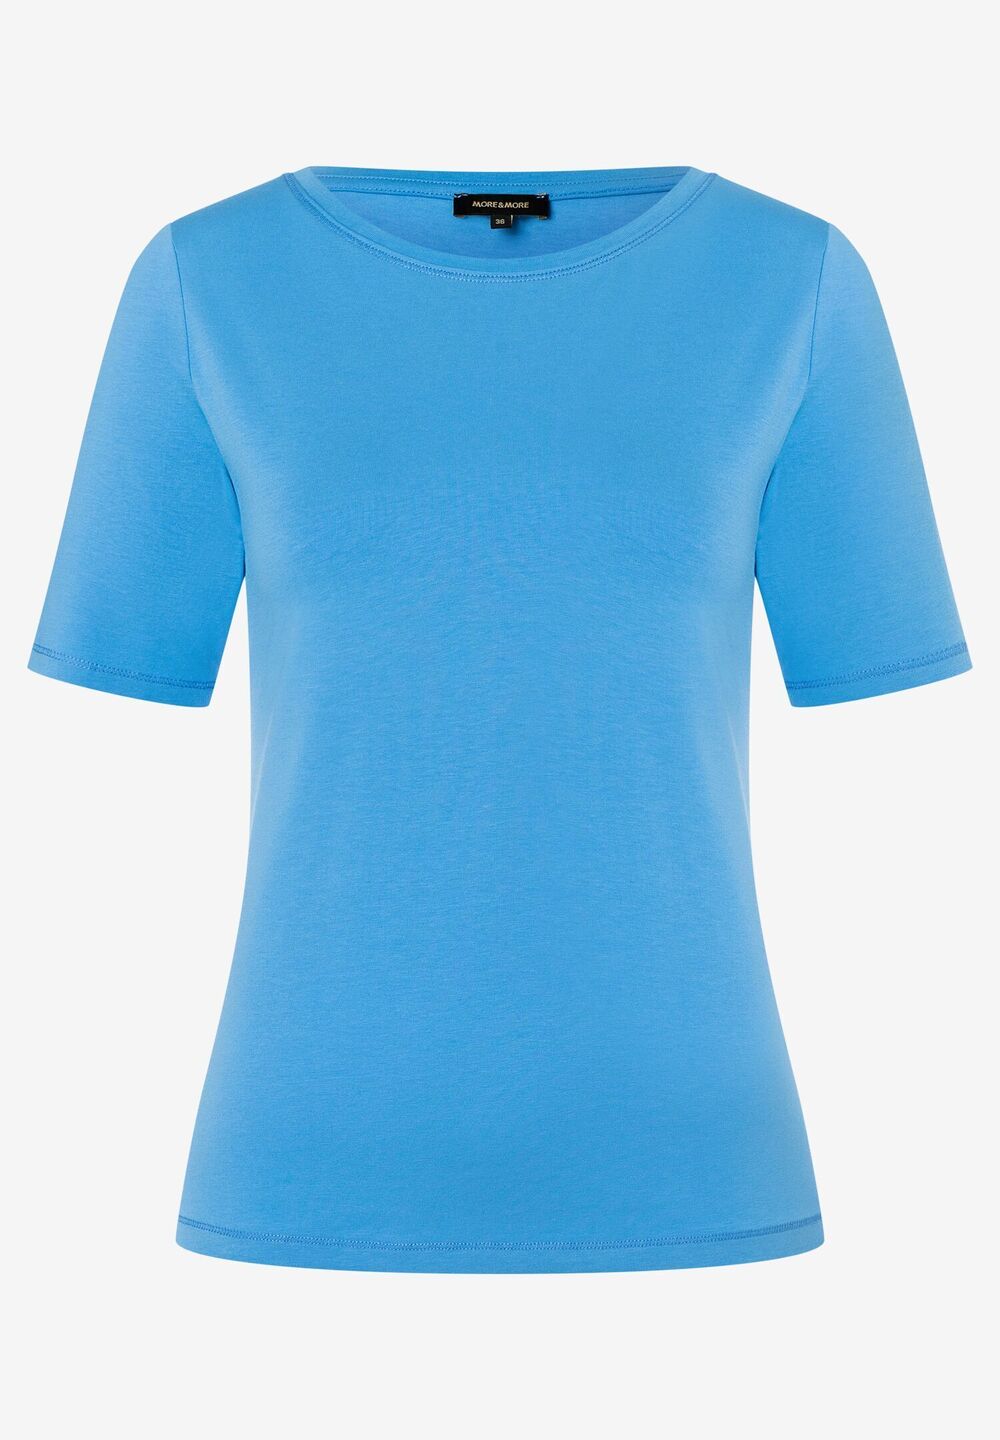 T-Shirt, U-Boot Ausschnitt, happy blue, Sommer-Kollektion, blau Rückansicht